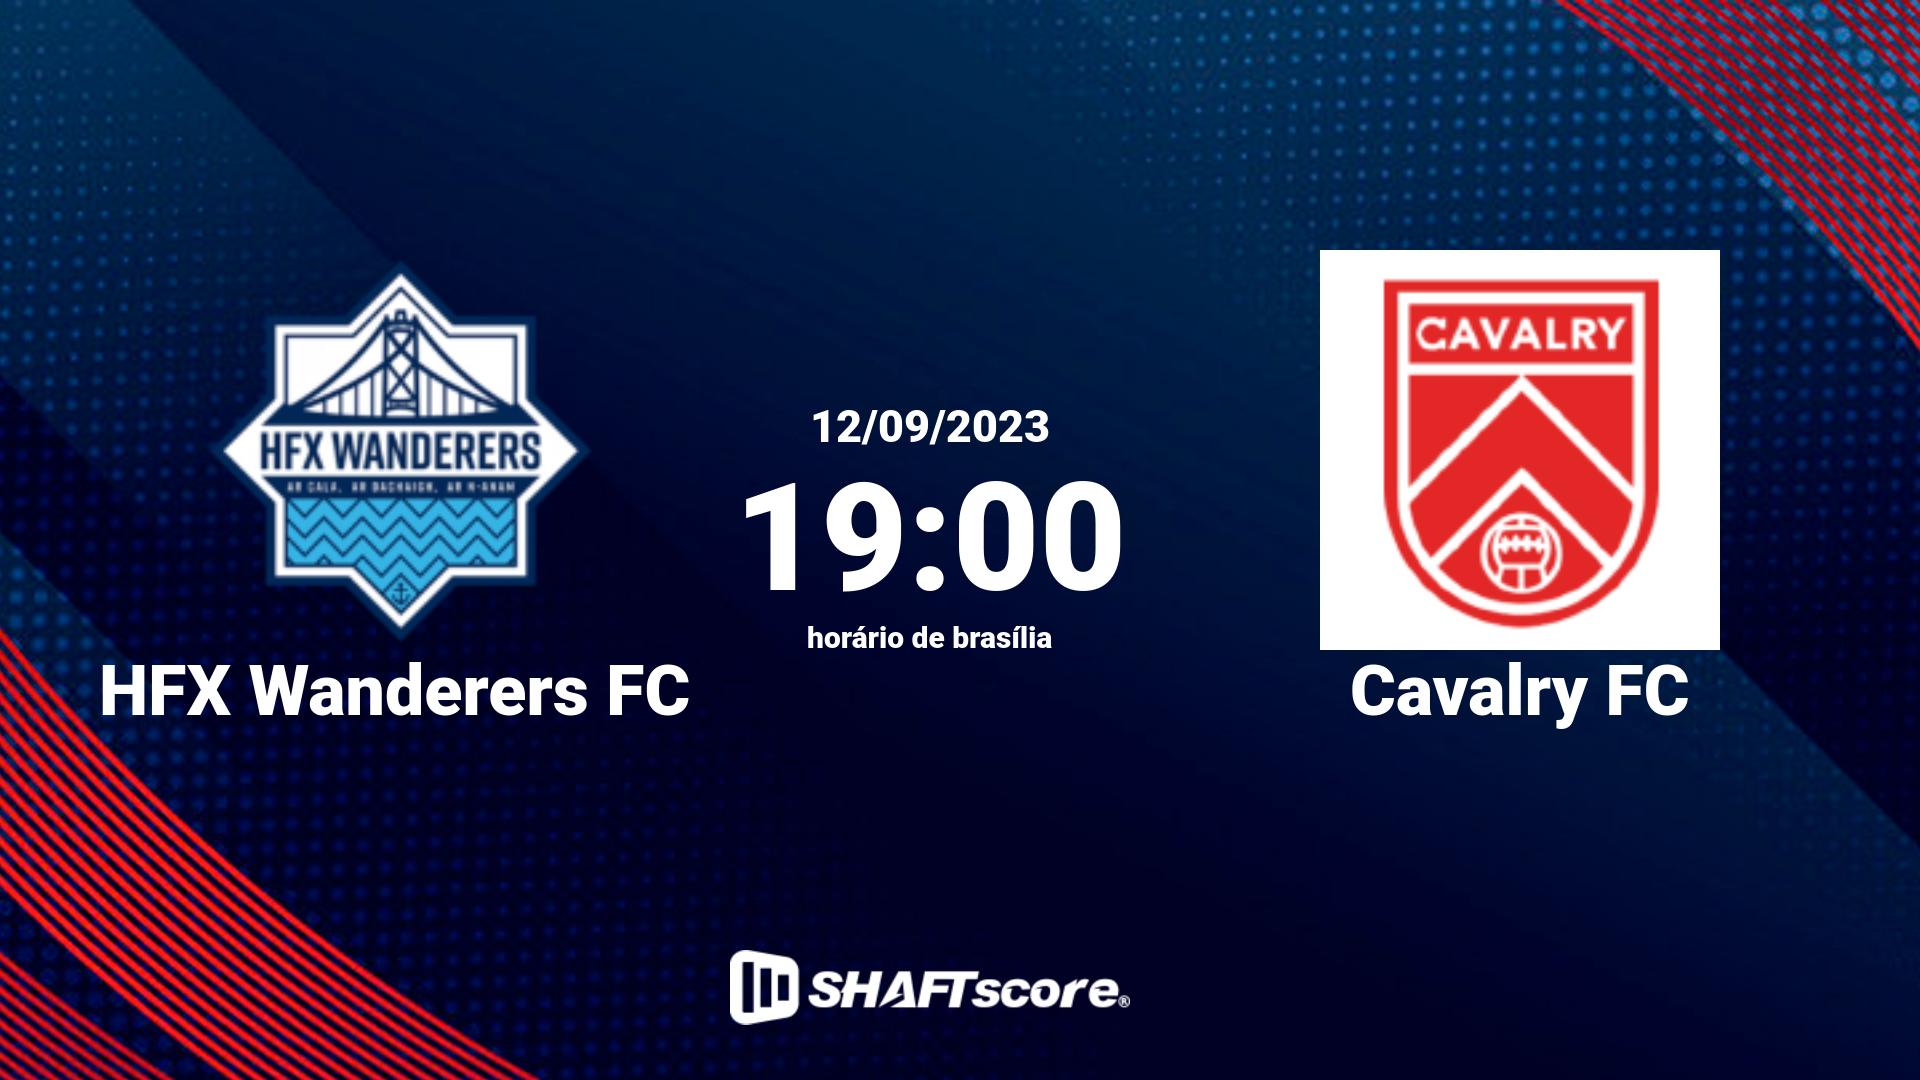 Estatísticas do jogo HFX Wanderers FC vs Cavalry FC 12.09 19:00